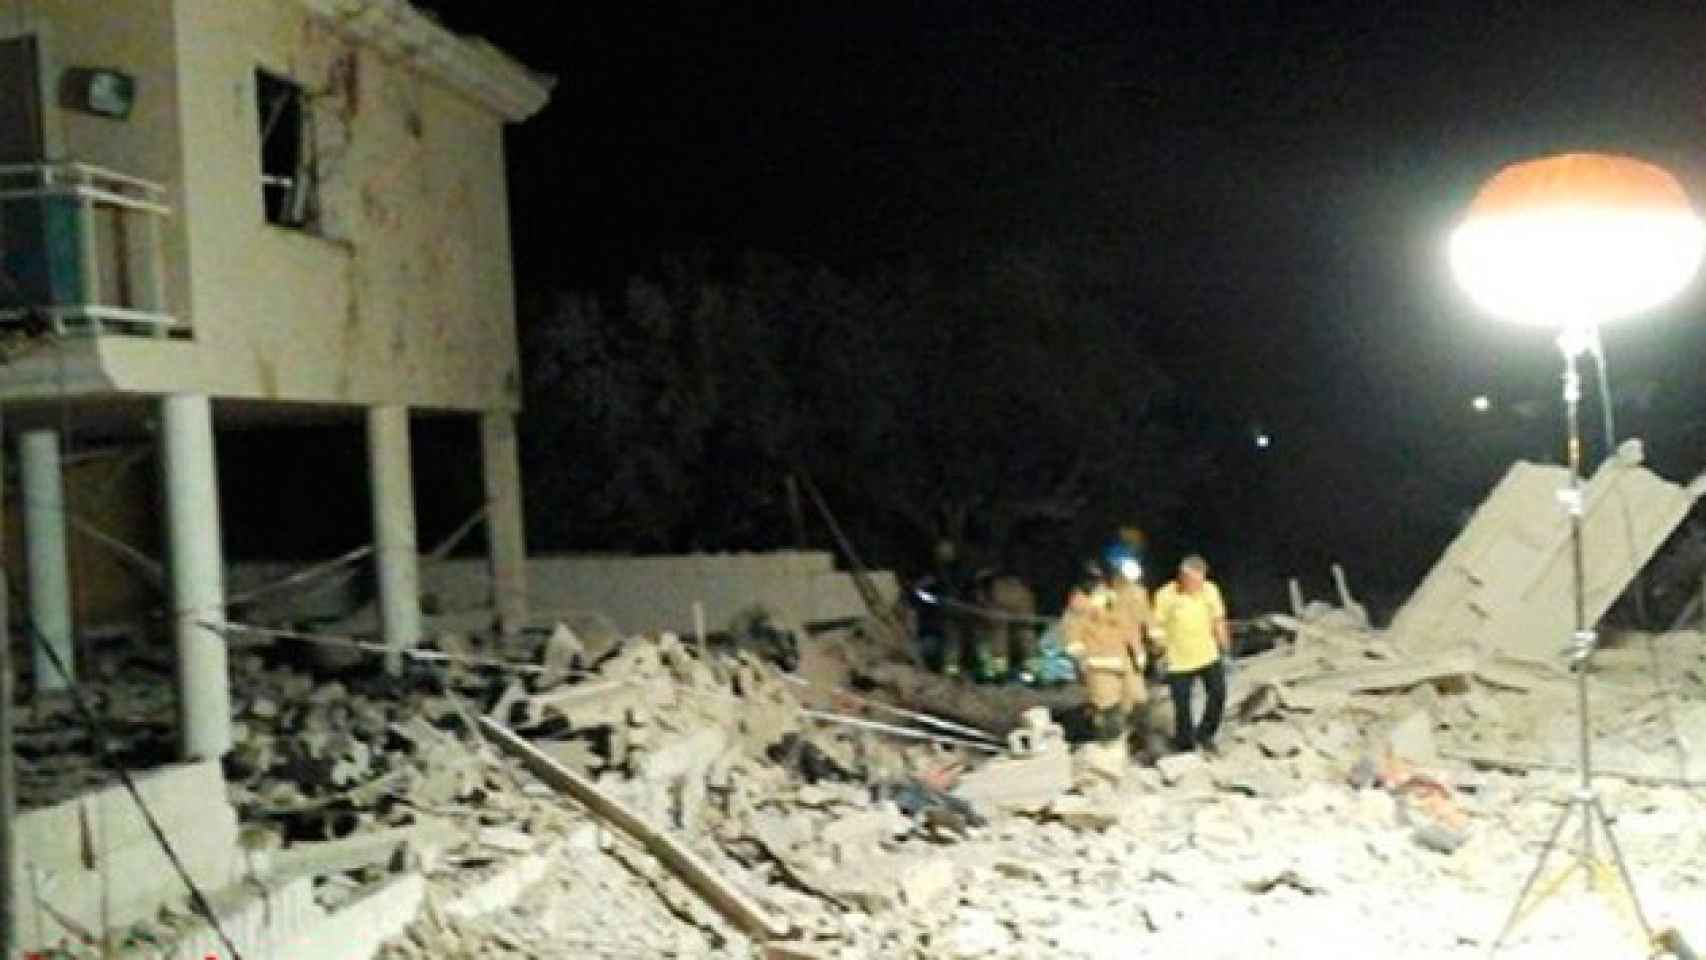 Los bomberos inspeccionan entre los restos del domicilio tras la explosión en Alcanar / BOMBERS